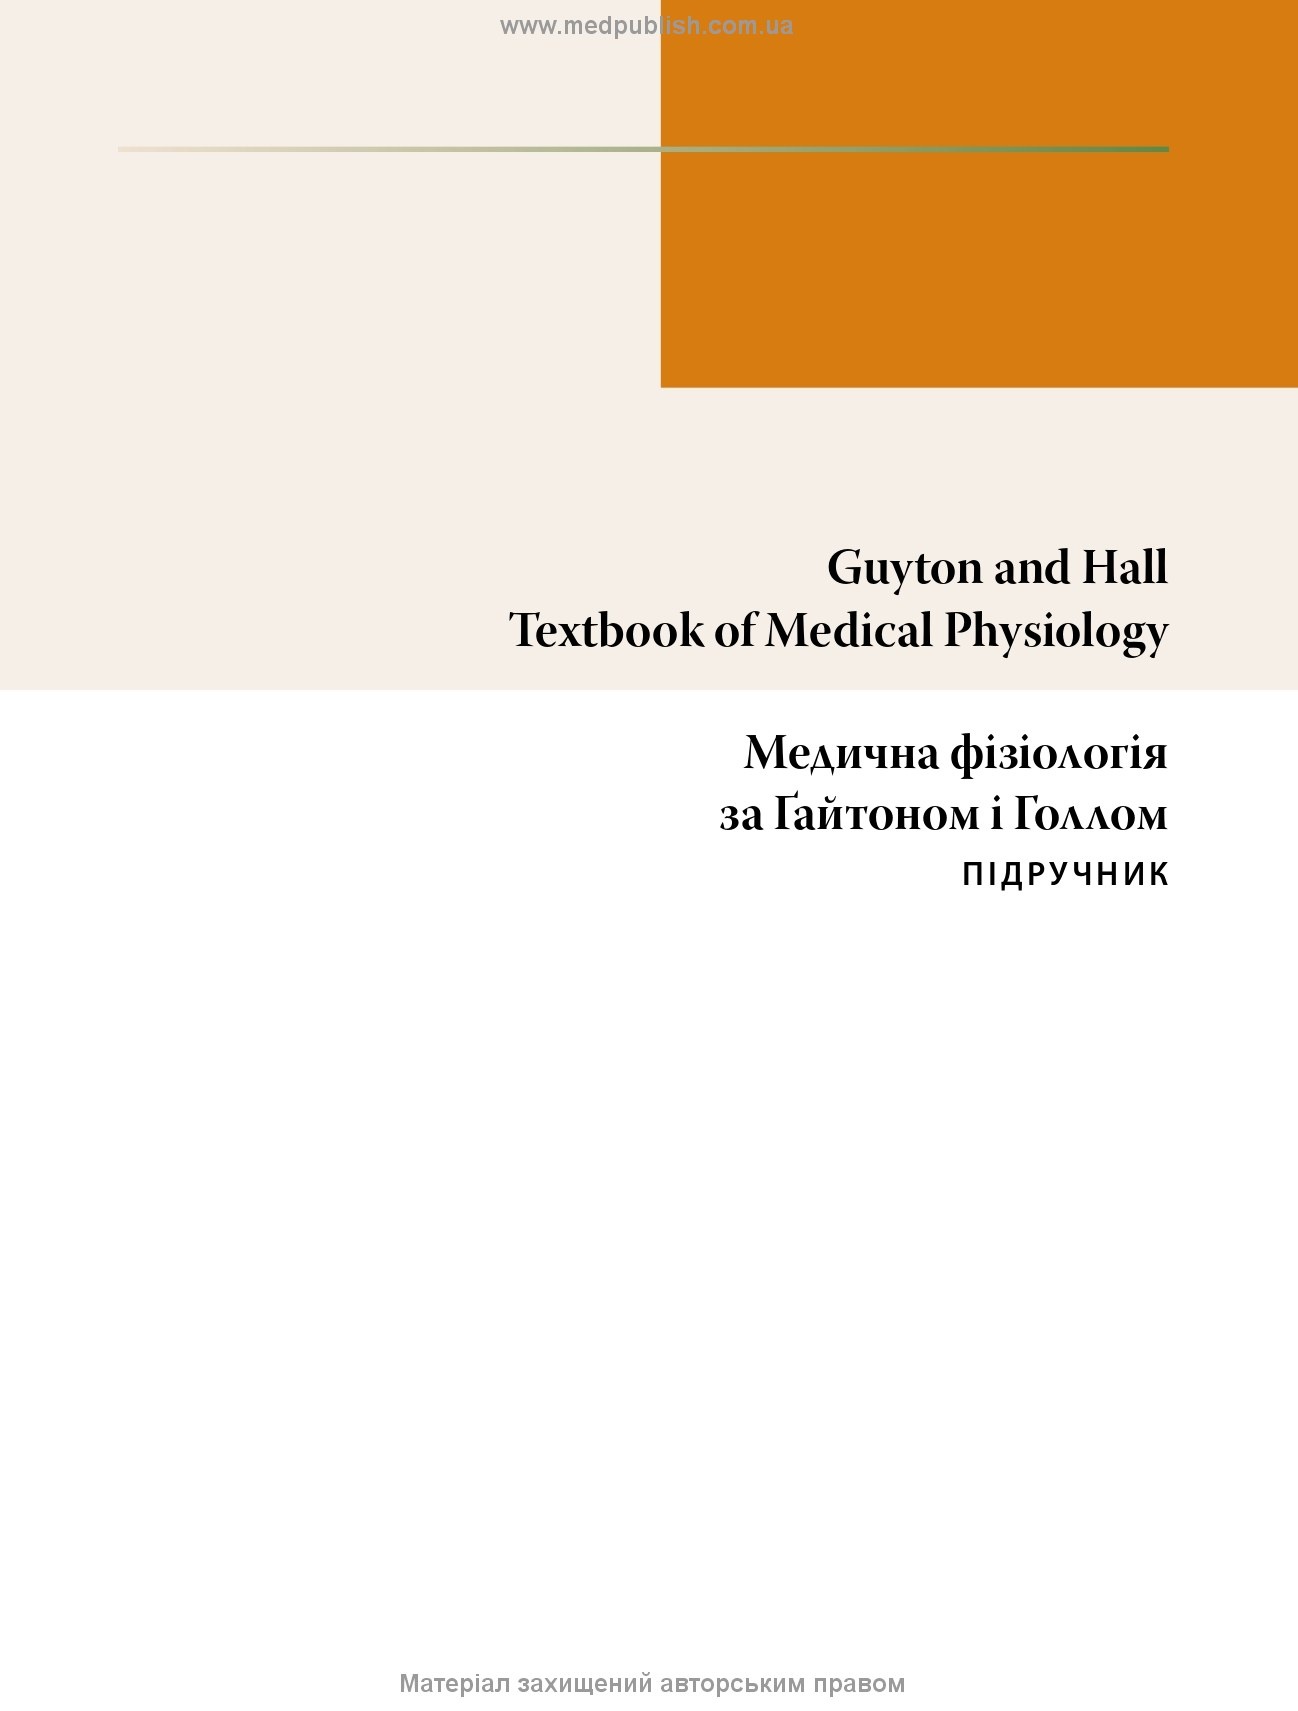 Медична фізіологія за Гайтоном і Голлом: 14-е видання: у 2 томах. Том 2. Автор — Джон Е. Голл. 